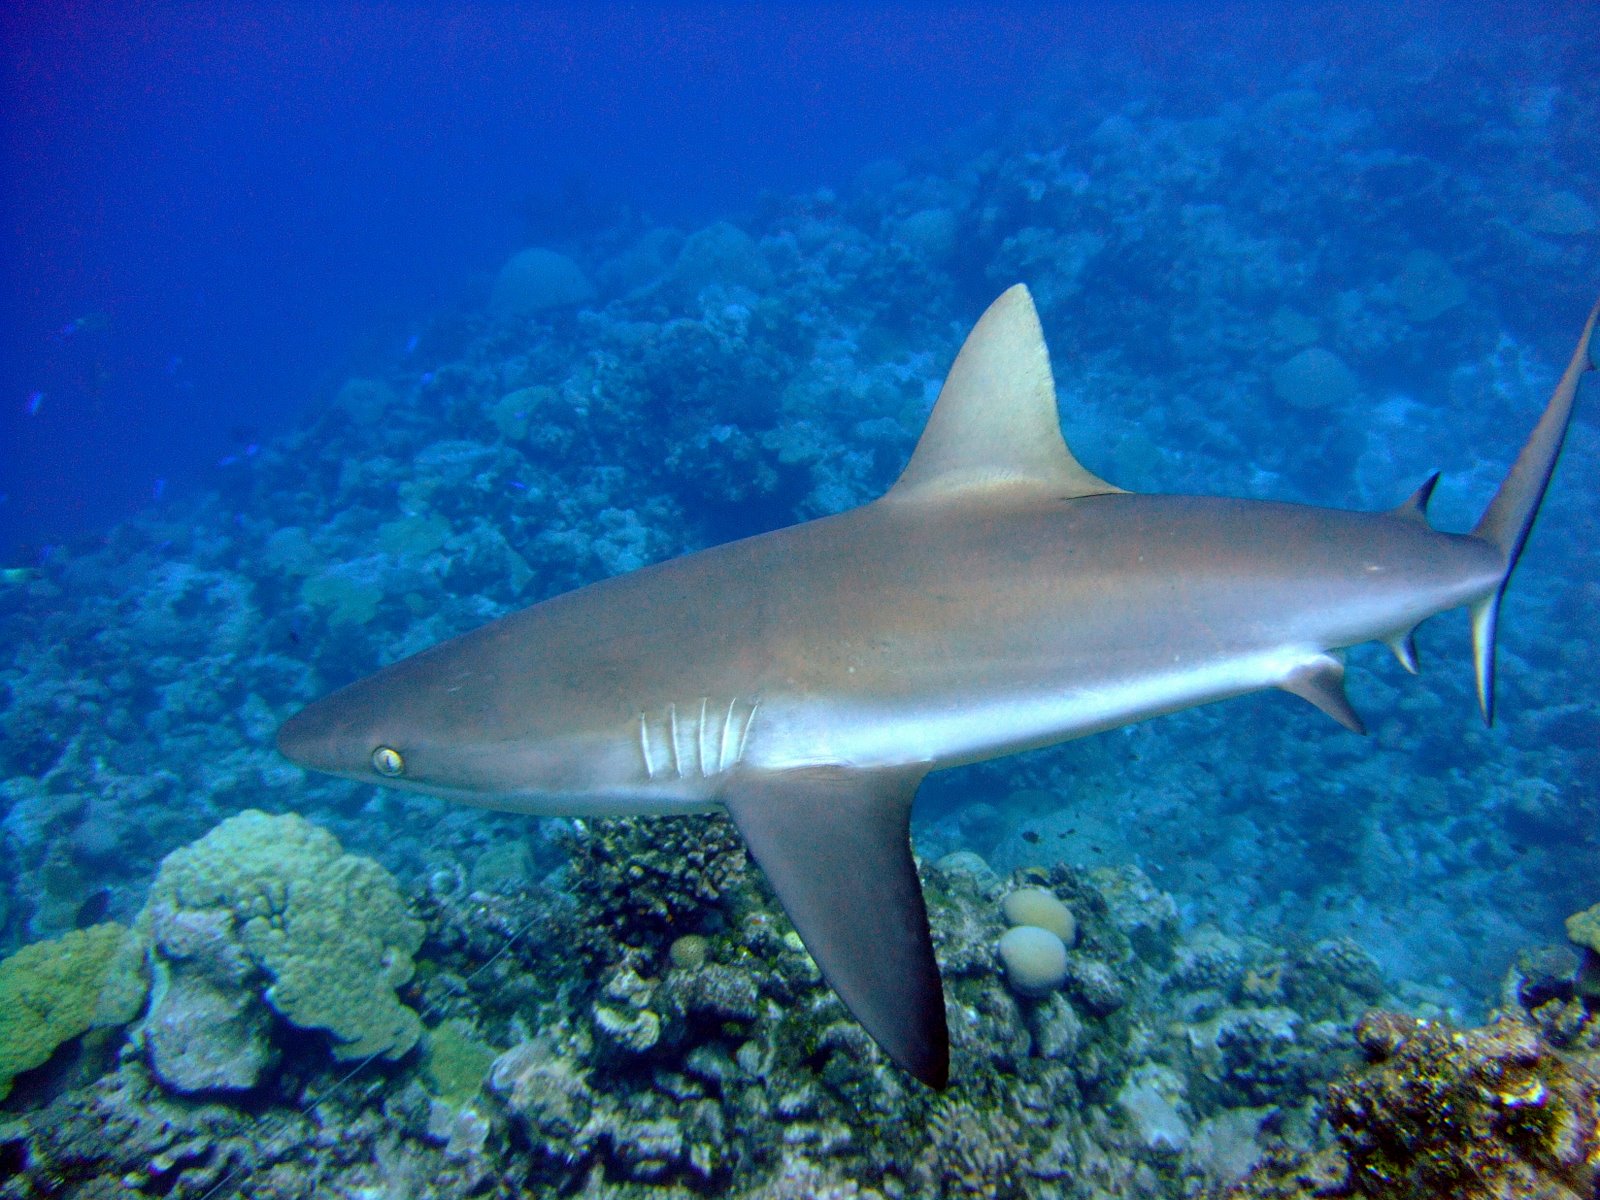 Le requin gris de récif est le requin le plus commun dans la bande équatoriale de l'Indo-Pacifique. Il peut vivre 32 ans et mesure en moyenne 1,9 m. Comme son nom l'indique, il vit dans les récifs coralliens. À la Pleine Lune, ce gros poisson migre vers les profondeurs. Ce comportement aux allures vampiriques est probablement une stratégie d’optimisation d’énergie et de chasse. Le requin suit les proies, elles-mêmes influencées par le cycle lunaire. © NOAA